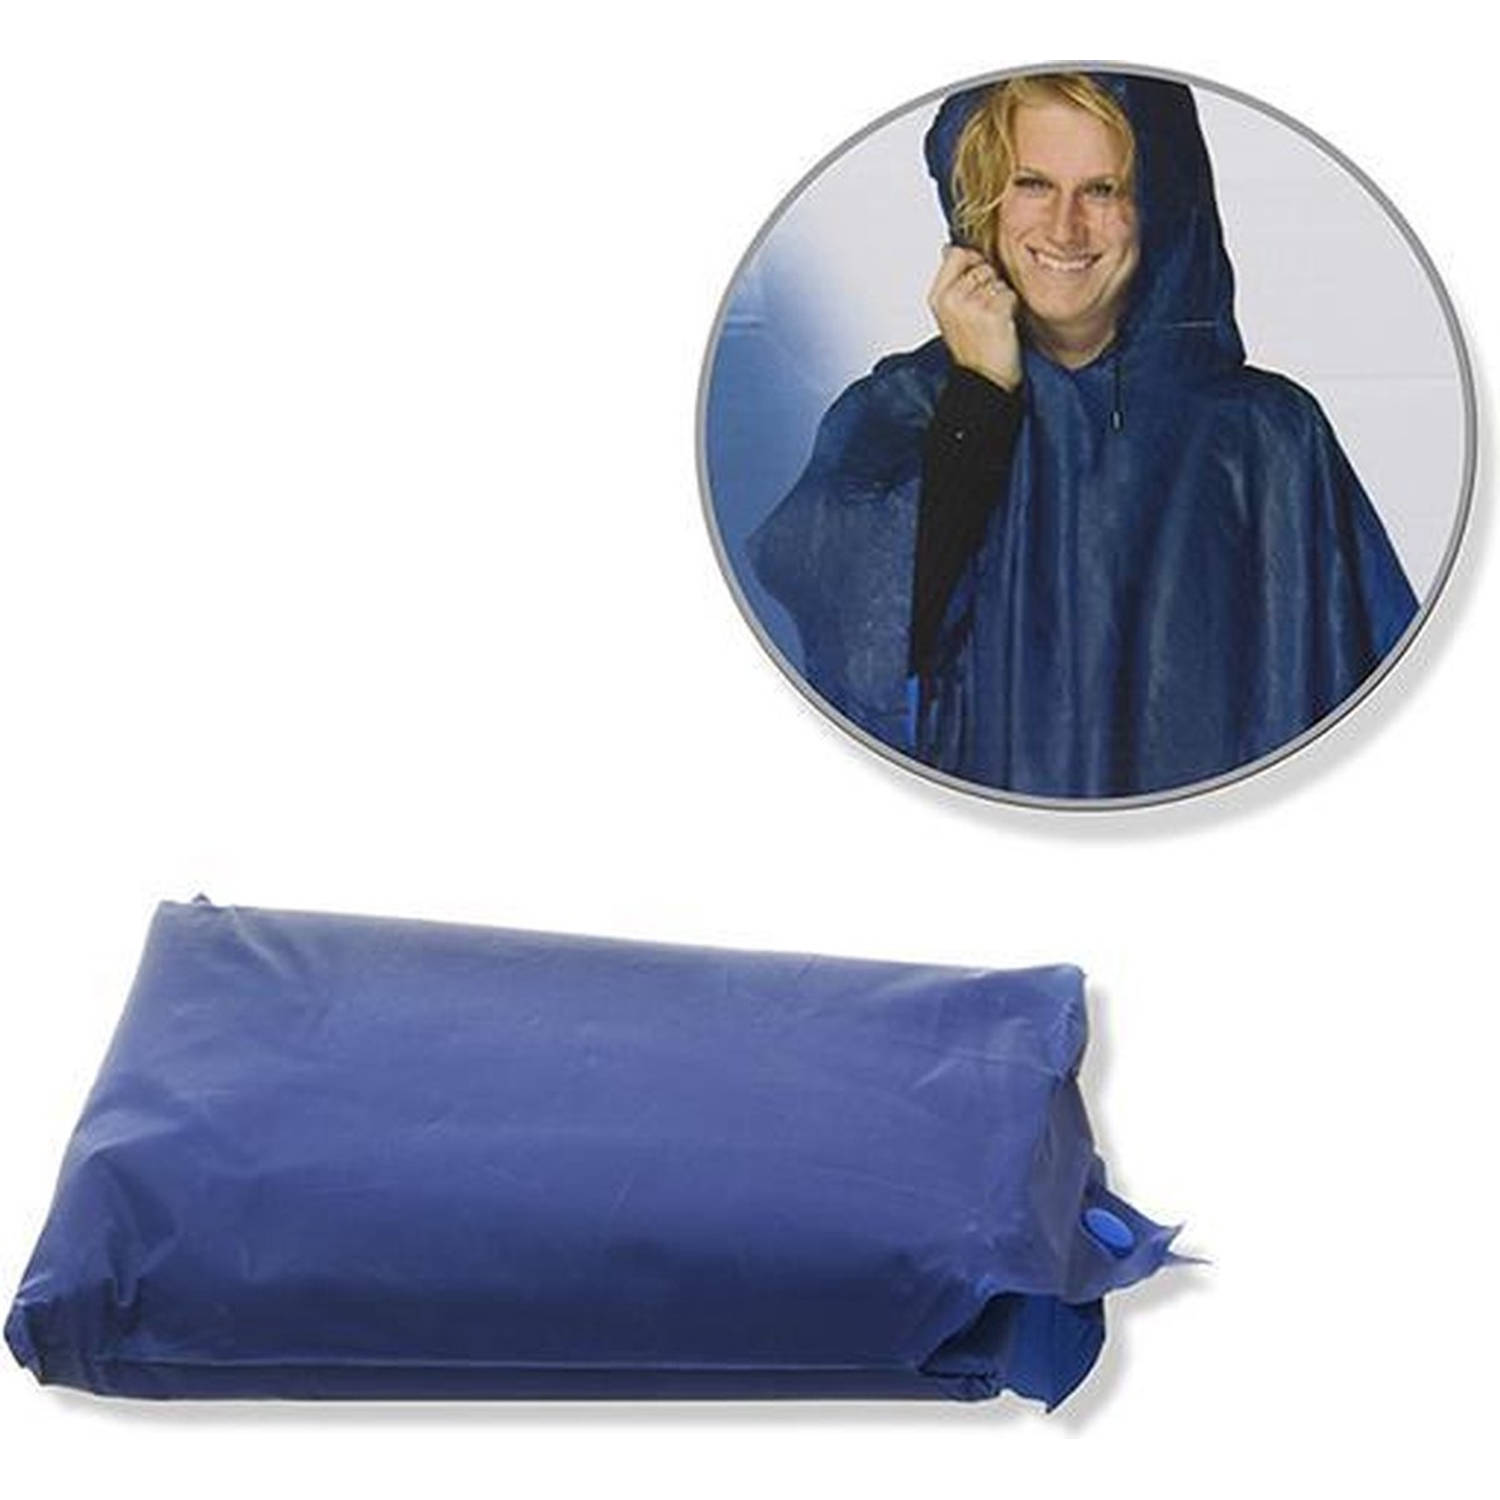 Regenponcho Regenpak - - Regen - Jas - Geschikt voor personen van 155 tot 190 cm |